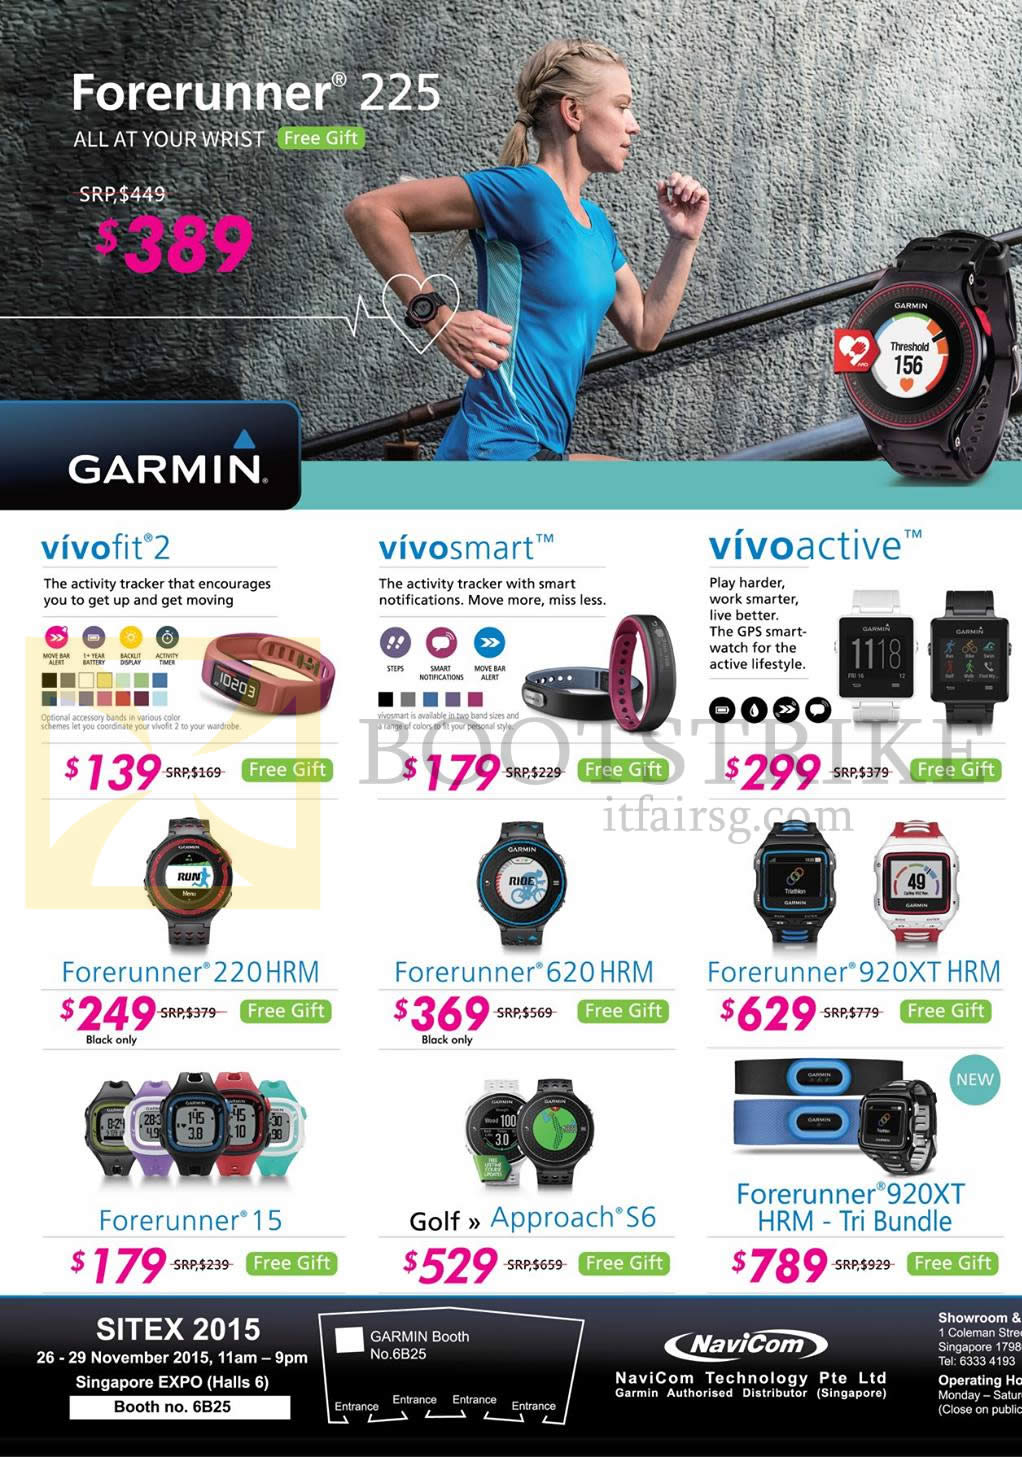 SITEX 2015 price list image brochure of Navicom Garmin GPS Watches Vivoactive, Vivofit 2, Vivosmart, Forerunner 920Xt, 620, 220, 15, Golf Approach S6, Forerunner 920XT HRM